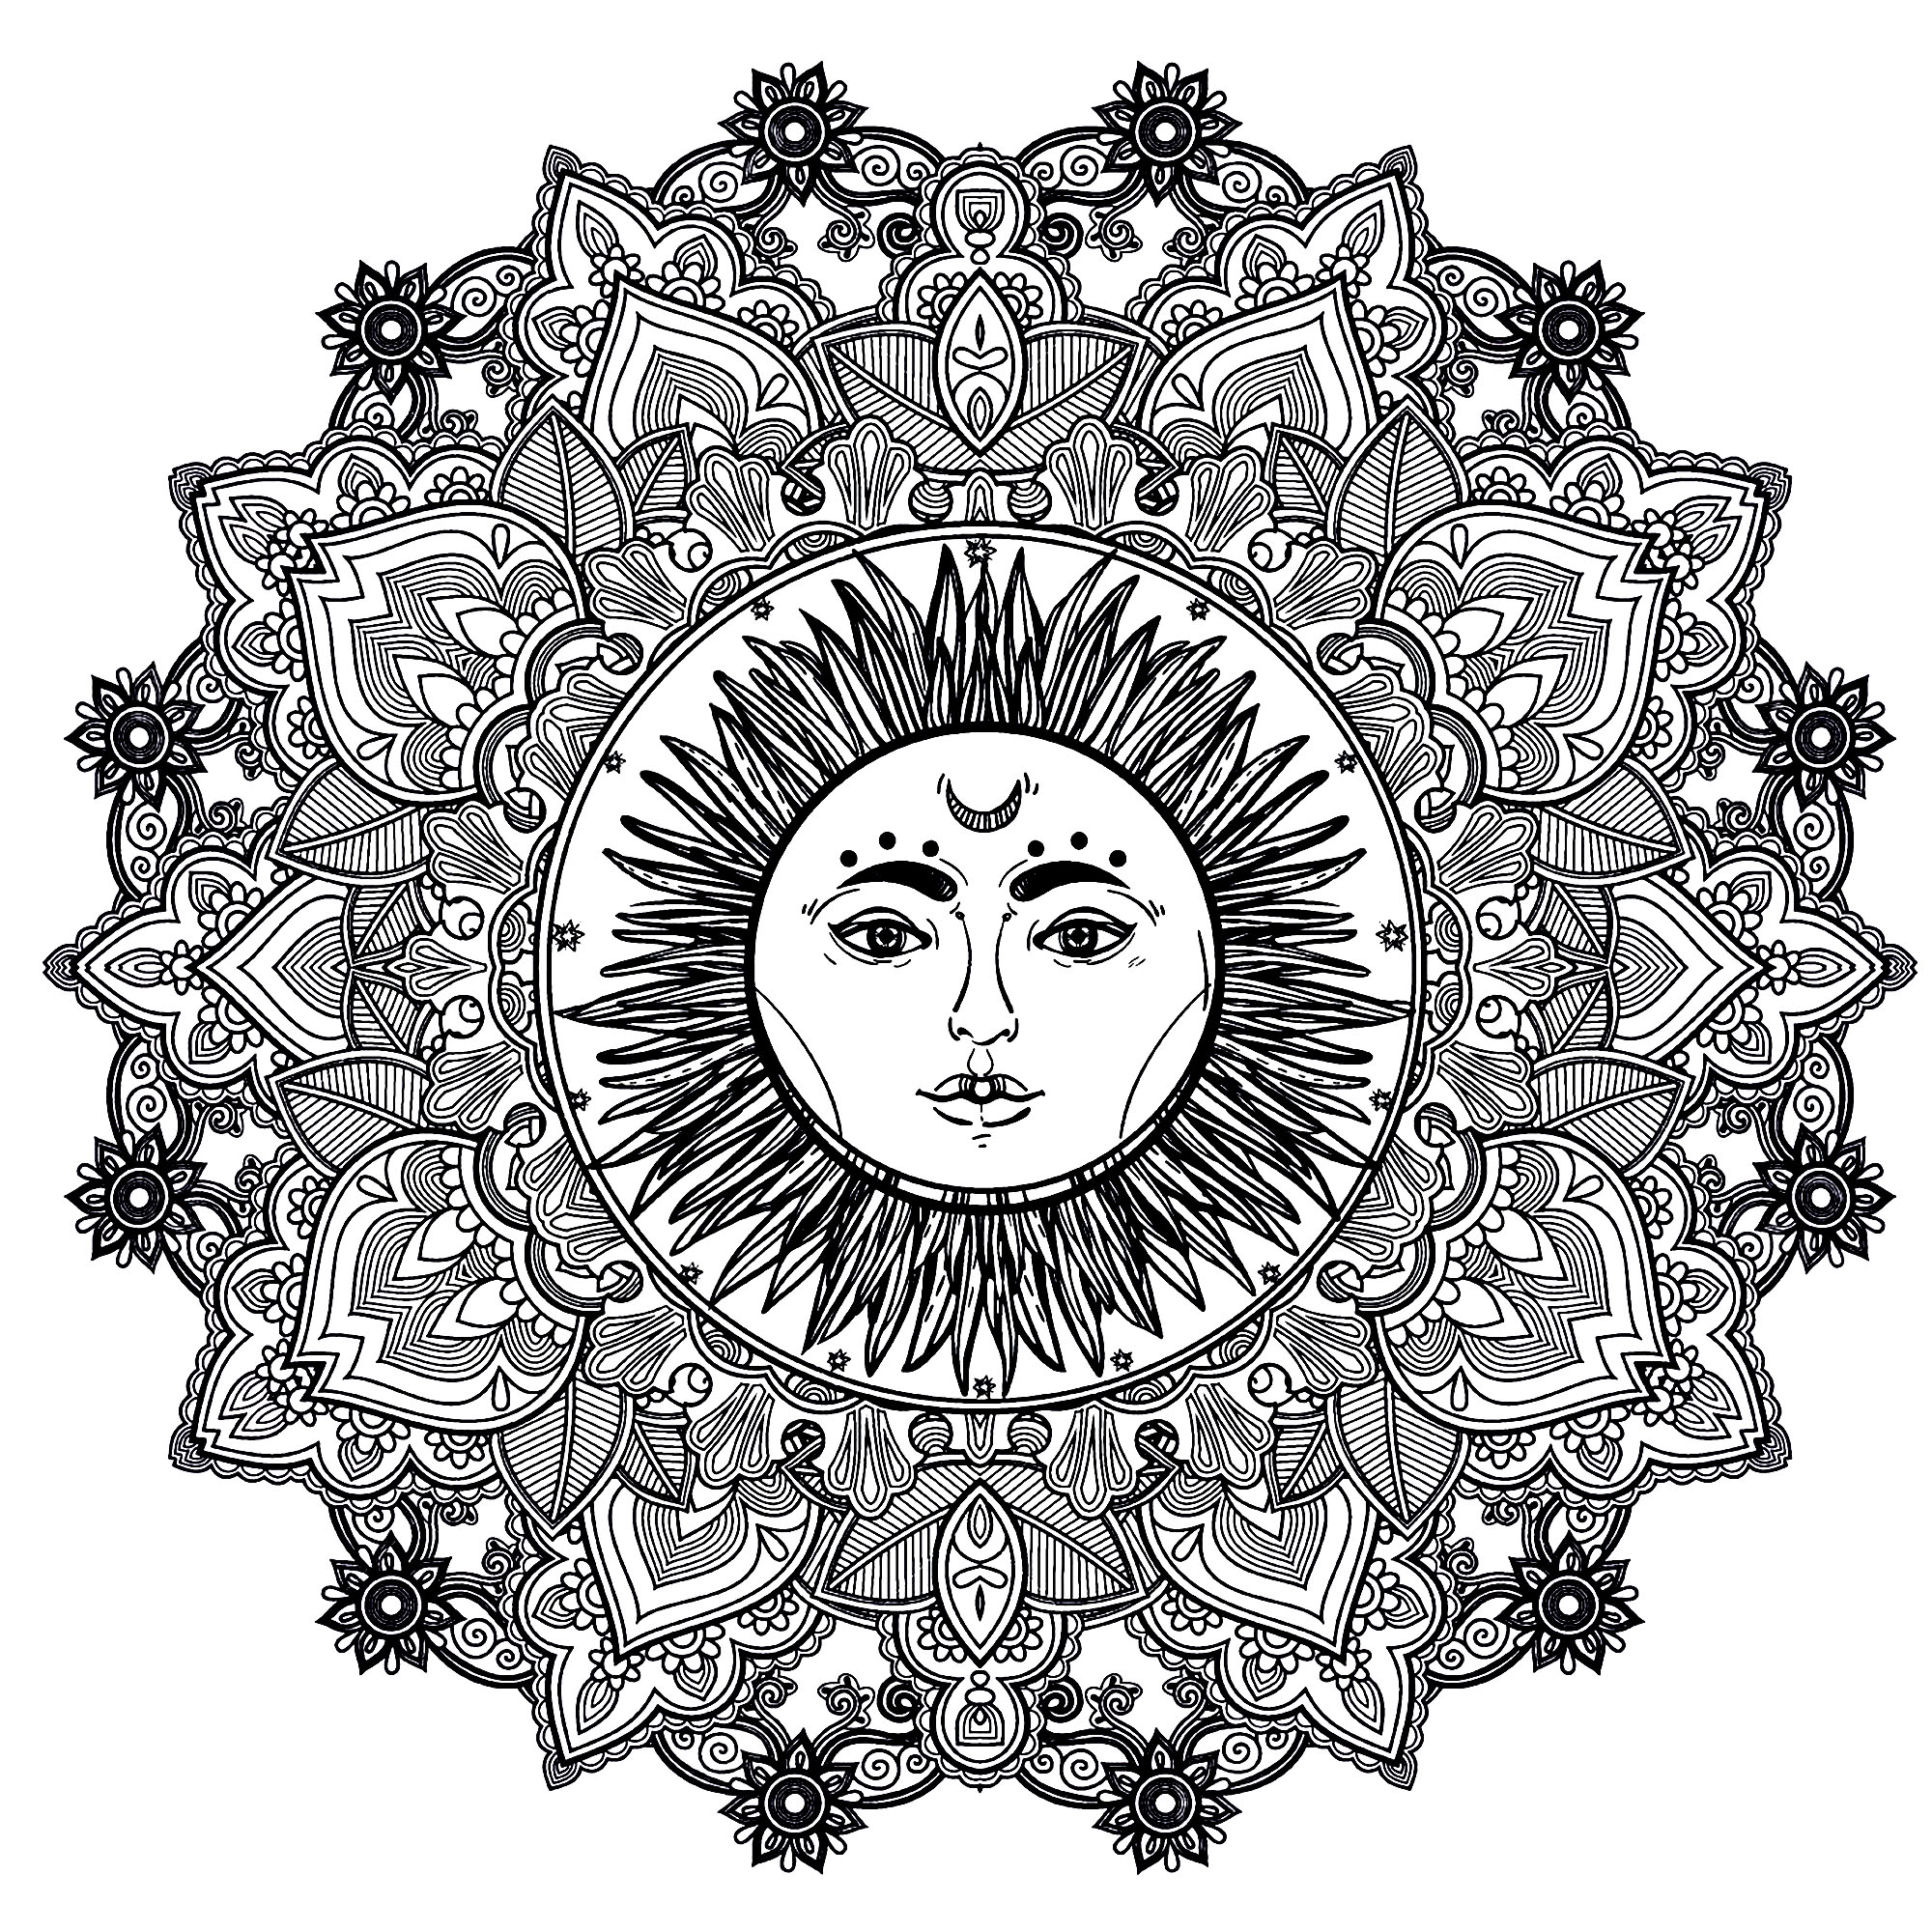 Uma Mandala muito harmoniosa, com um bonito sol com um rosto humano no centro, para um momento de puro relaxamento. Sentirá imediatamente os benefícios da Arte-Terapia.